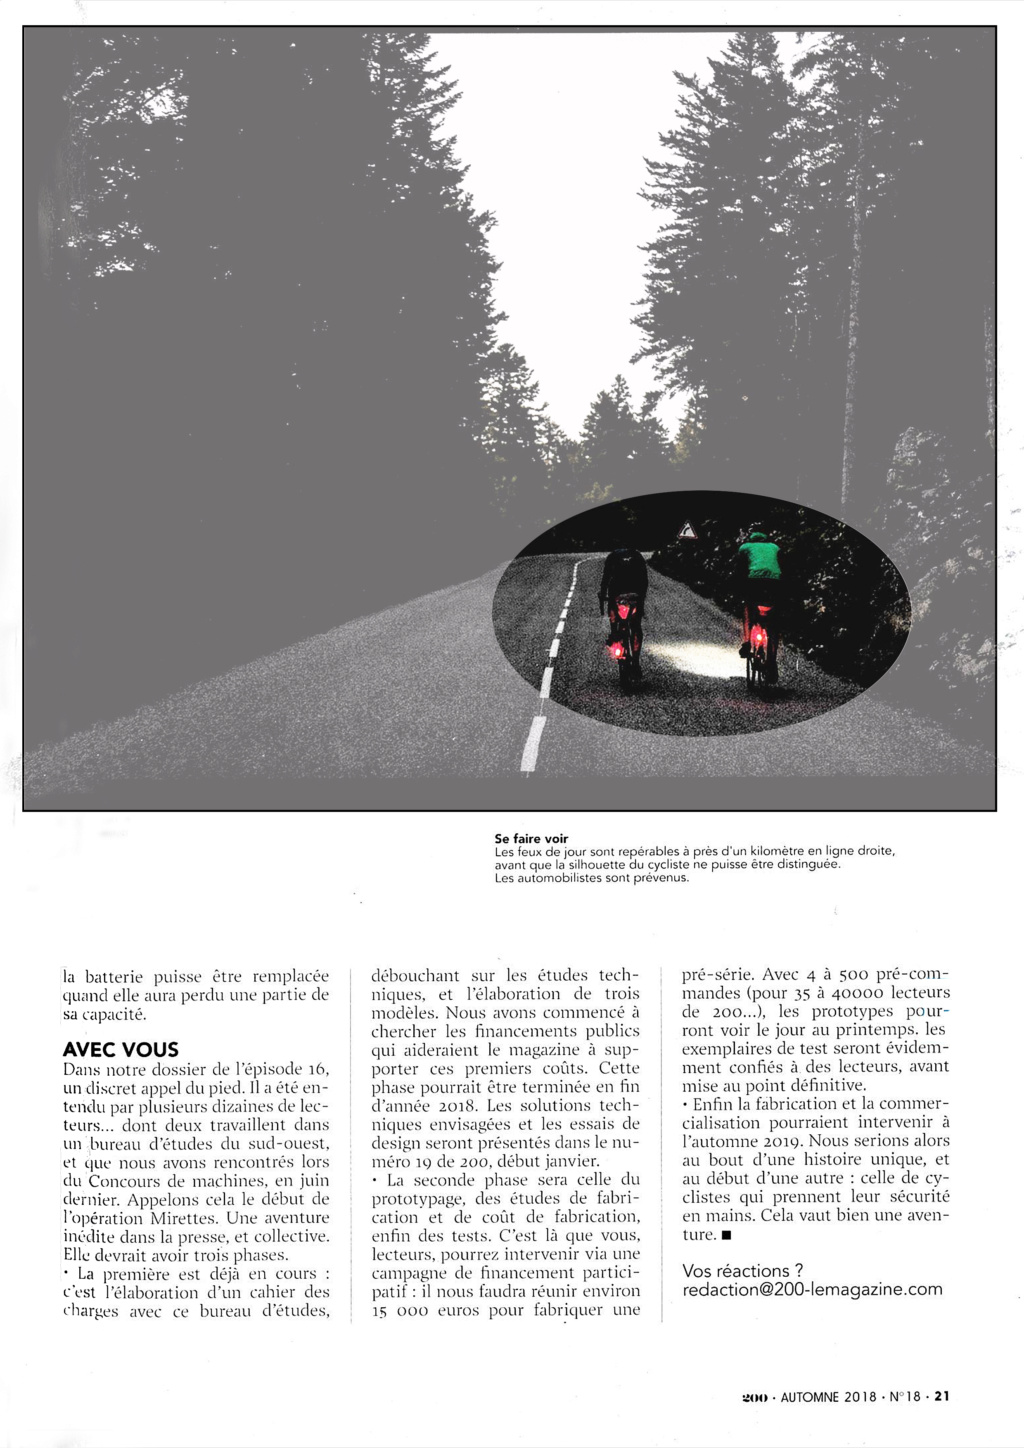 eclairage à DEL pour velo ( LED light for bike) PARTIE  1 - Page 21 C219